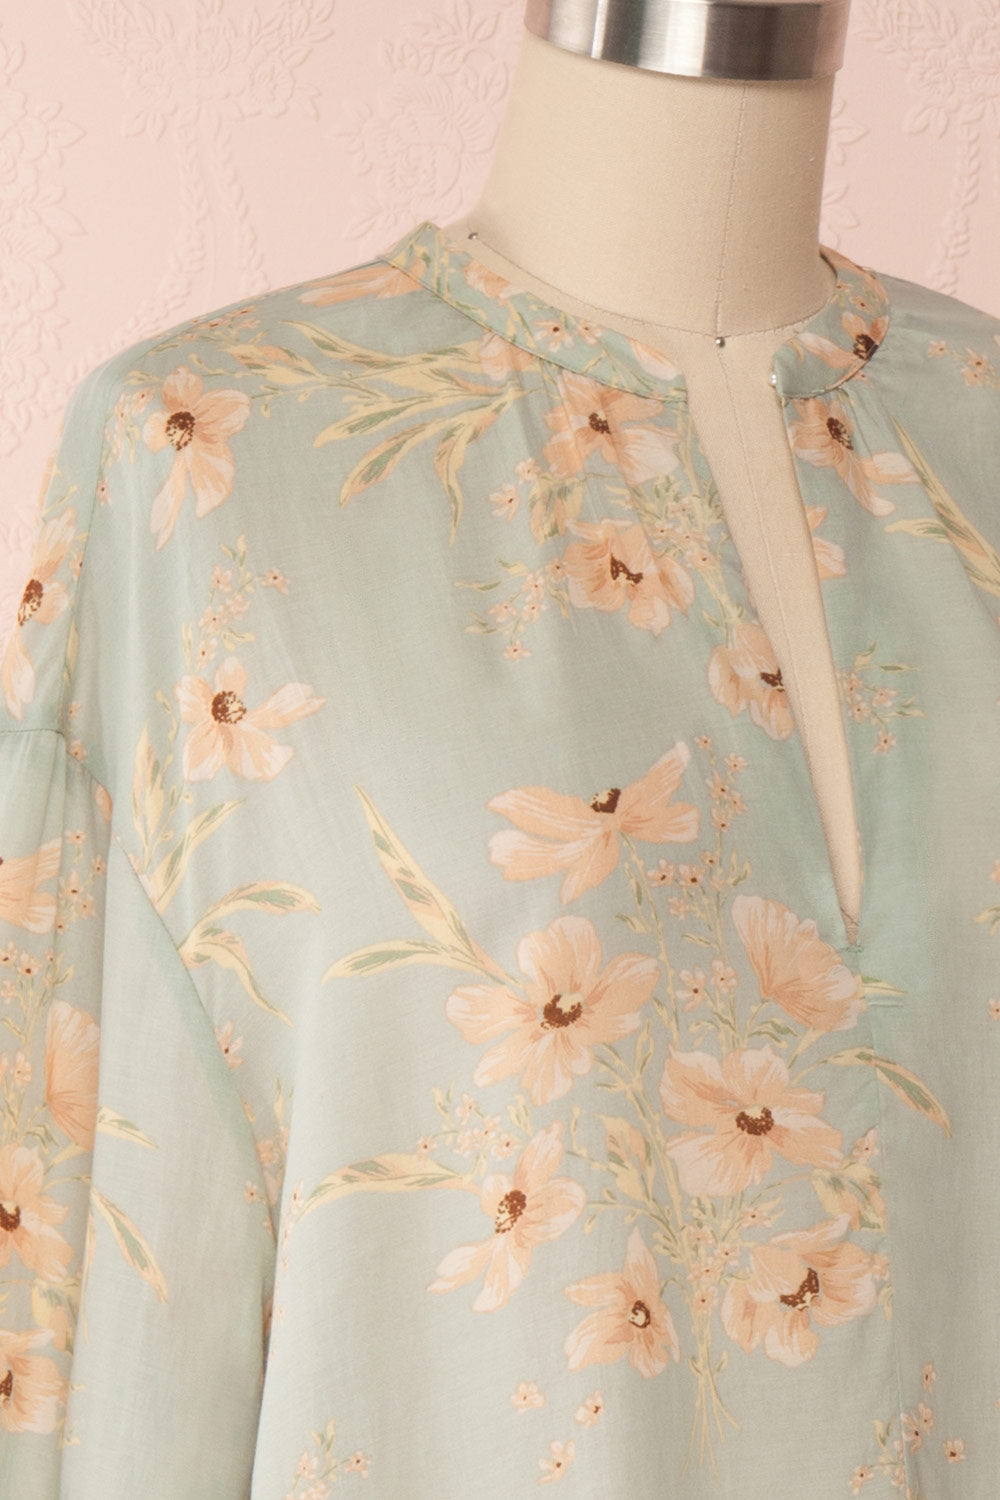 Eluska Pastel Green Floral Short Dress | Boutique 1861 side close up